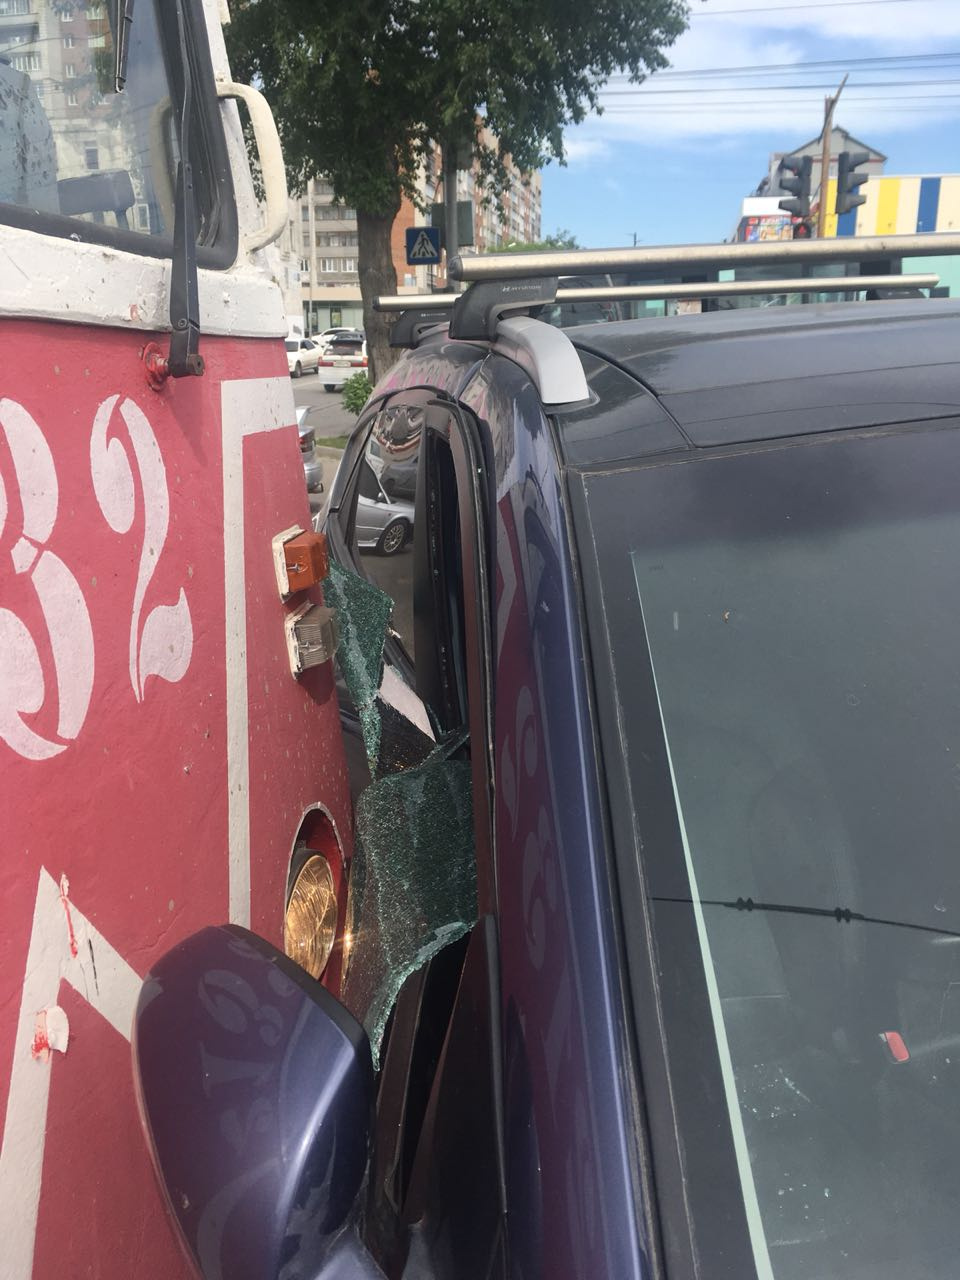 «При повороте направо на улицу Пархоменко Hyundai не уступил дорогу трамваю», — рассказали в службе аварийных комиссаров «Альянс»